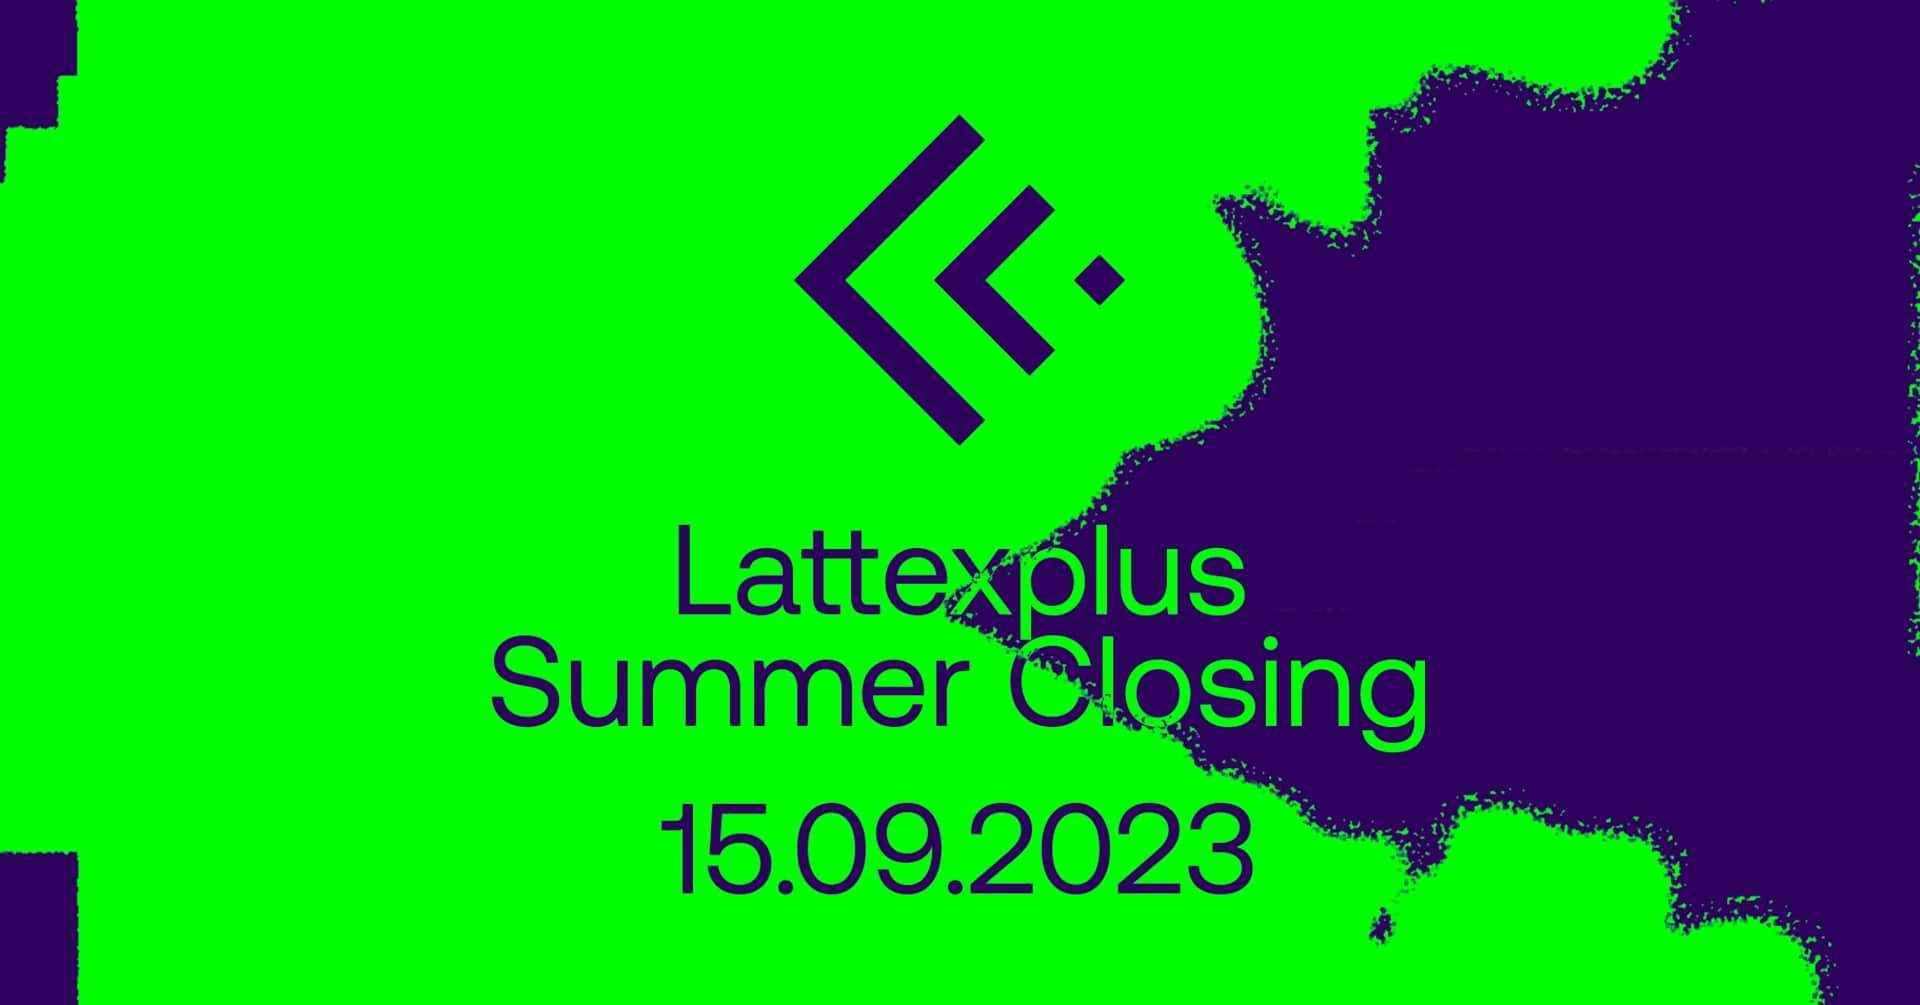 Lattexplus Summer Closing with Marcellus Pittman - フライヤー表